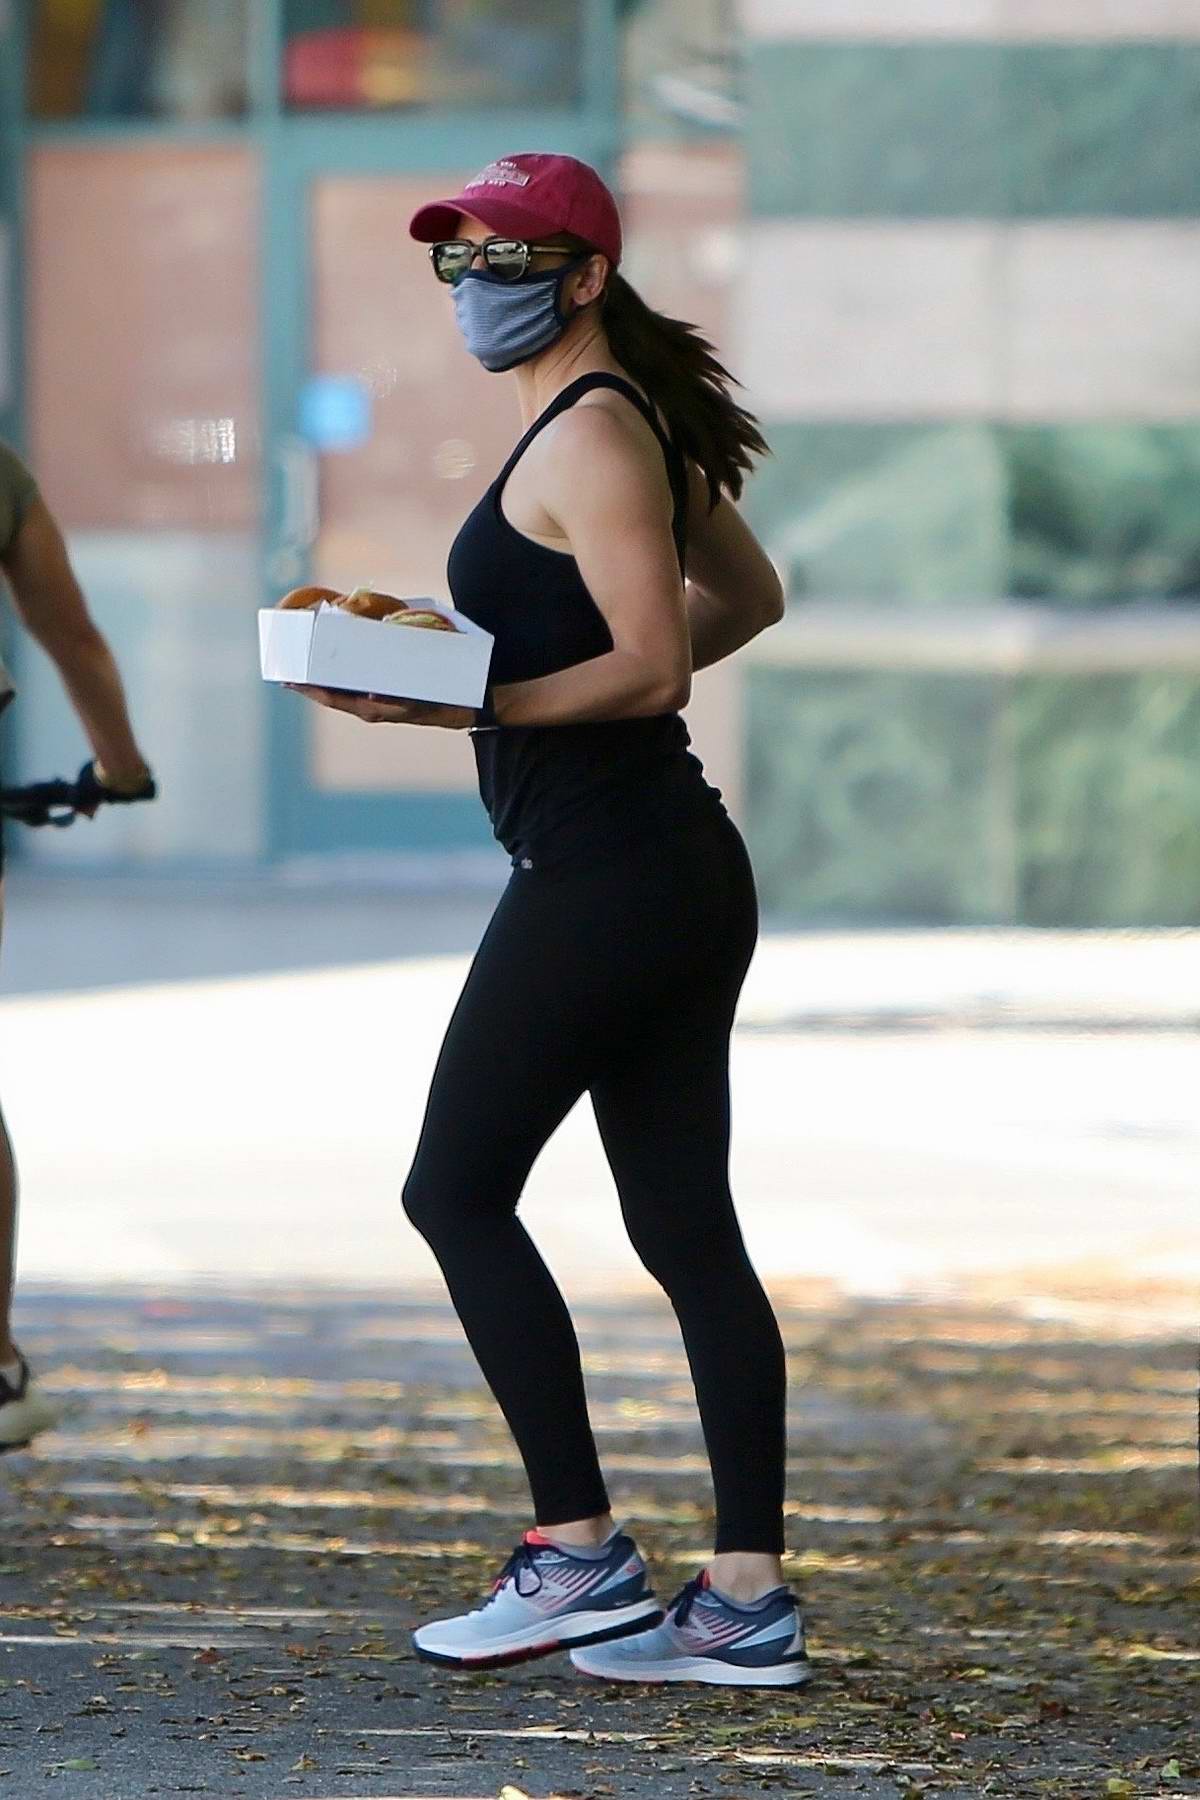 Jennifer Garner sports tank top and leggings while grabbing take